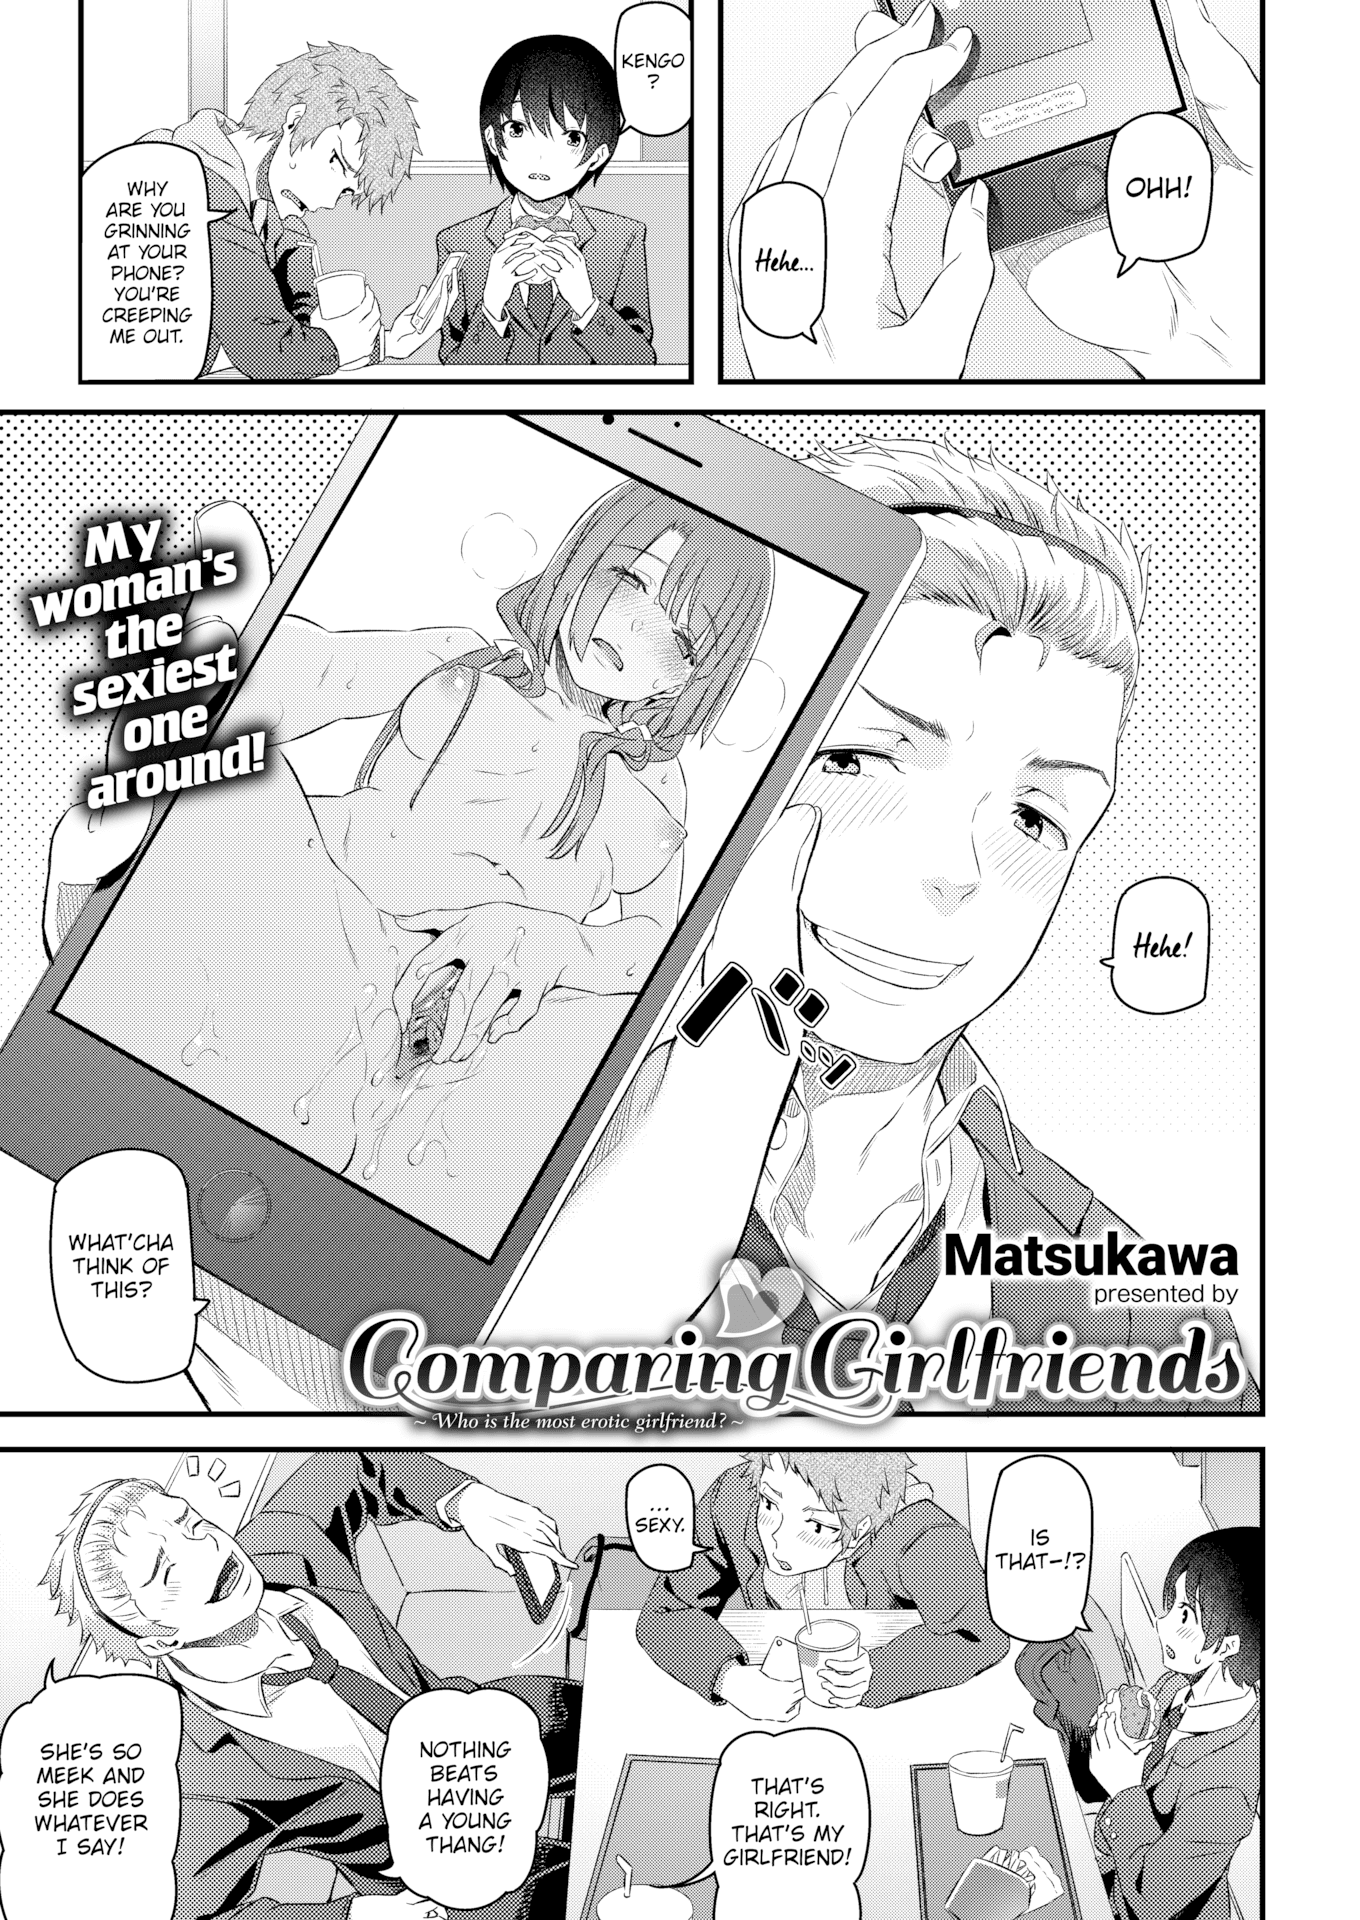 Comparing girlfriends by matsukawa